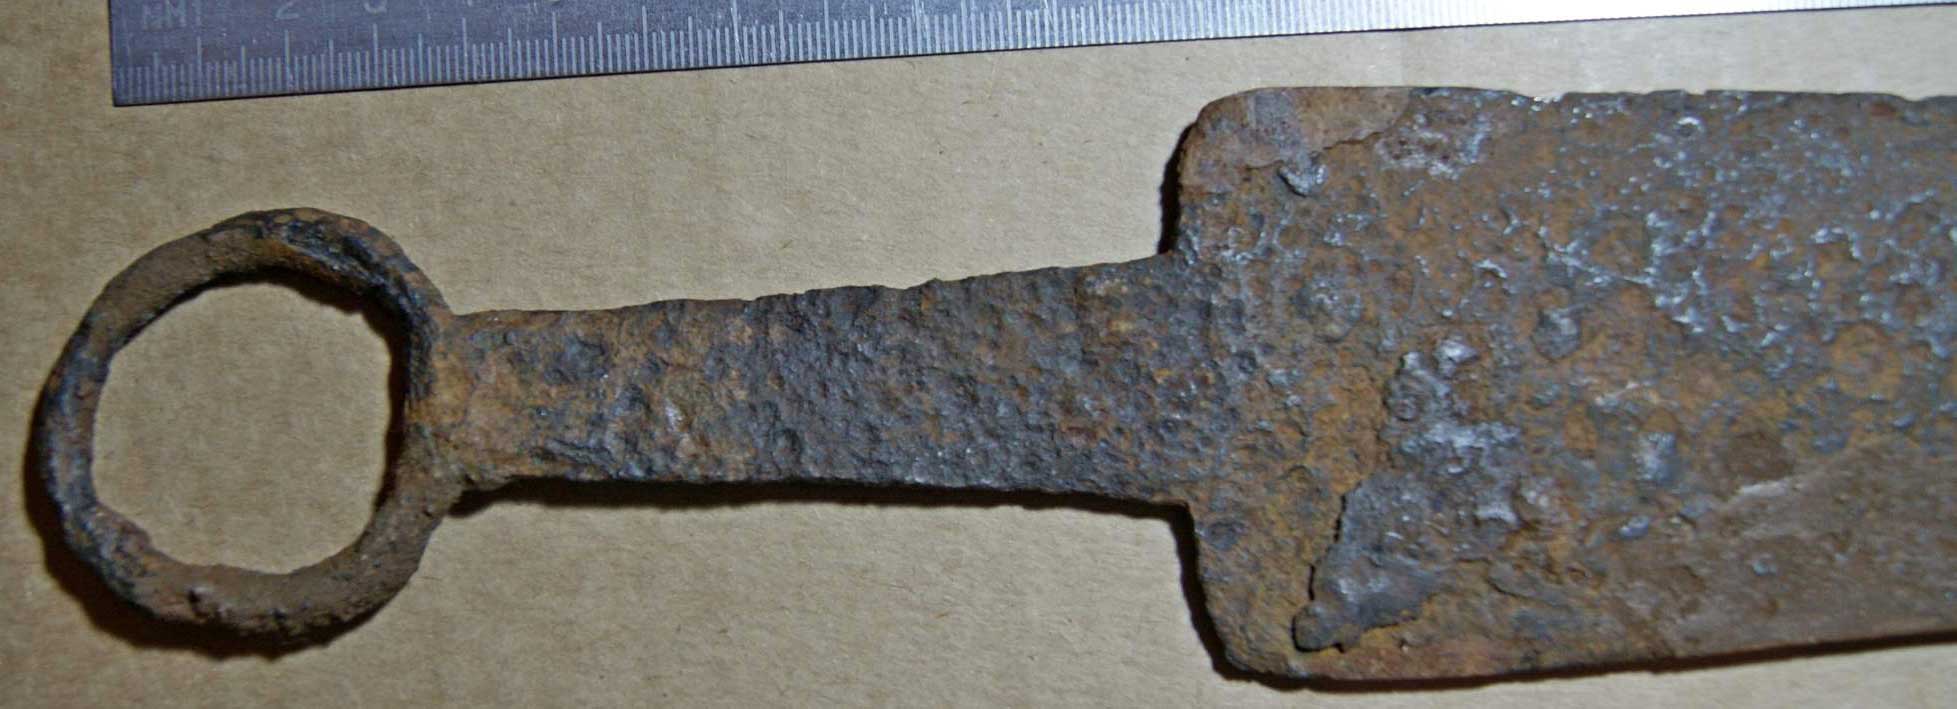 Настоящий железный рыцарский меч археологическая находка